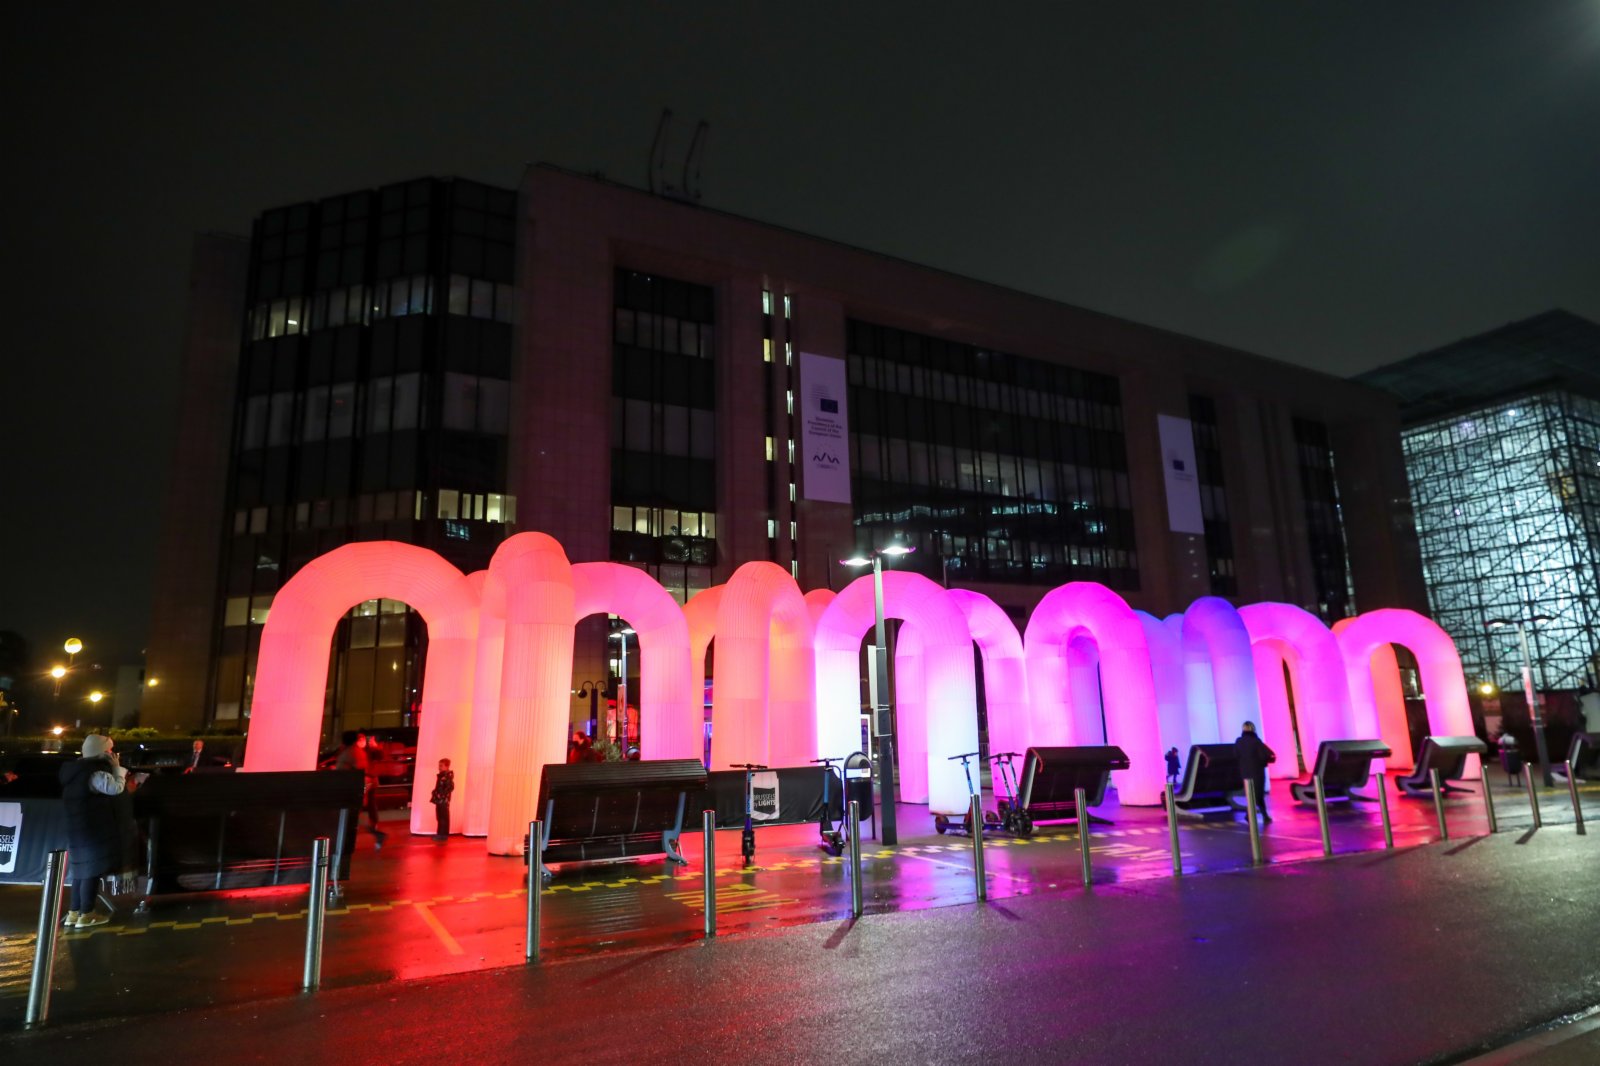 這是11月30日在比利時布魯塞爾的舒曼廣場拍攝的燈光藝術裝置「天空城堡」。